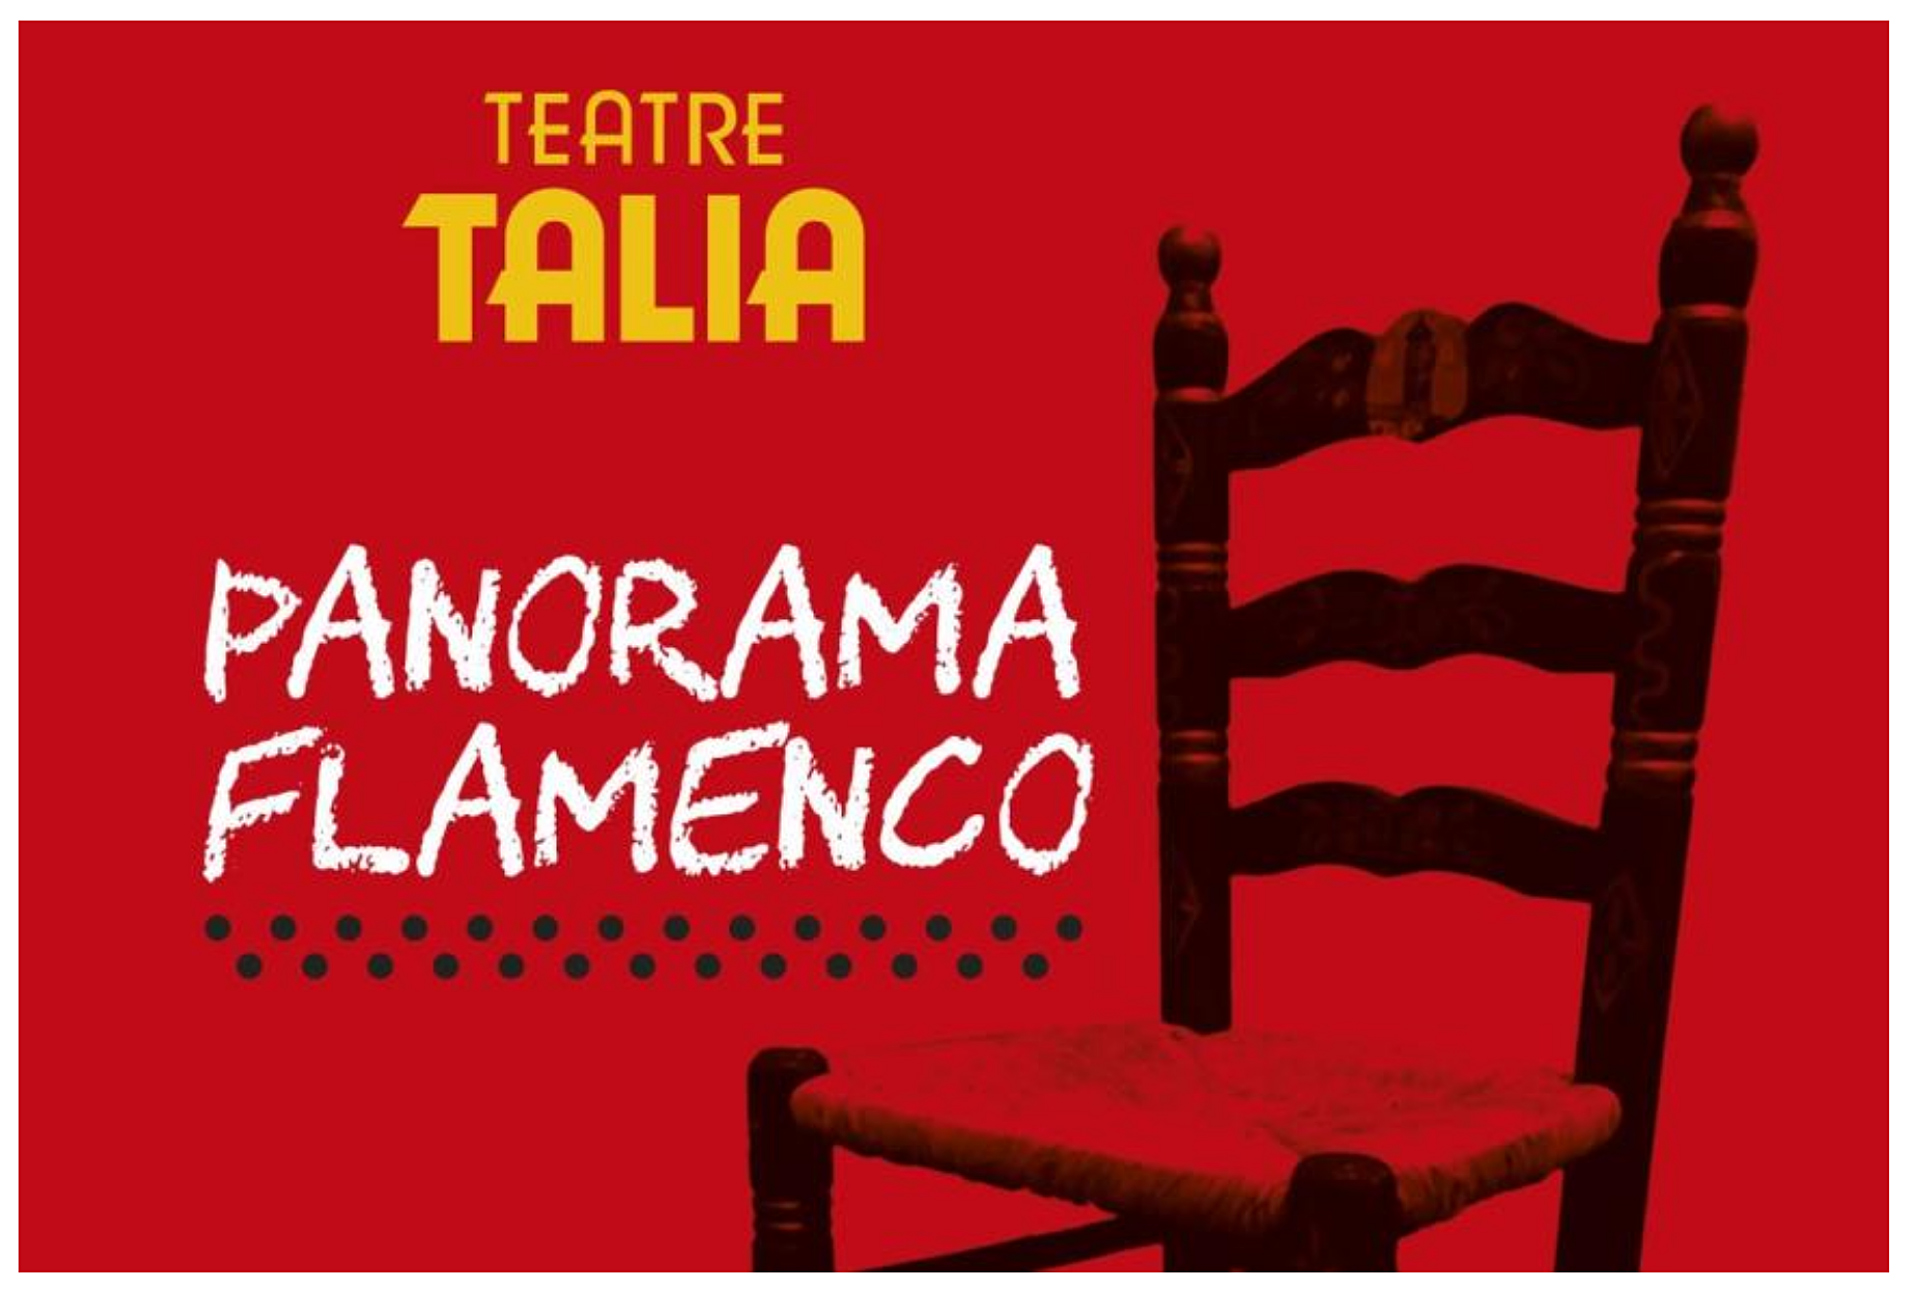 El Teatre Talia abre sus puertas al público y al arte flamenco